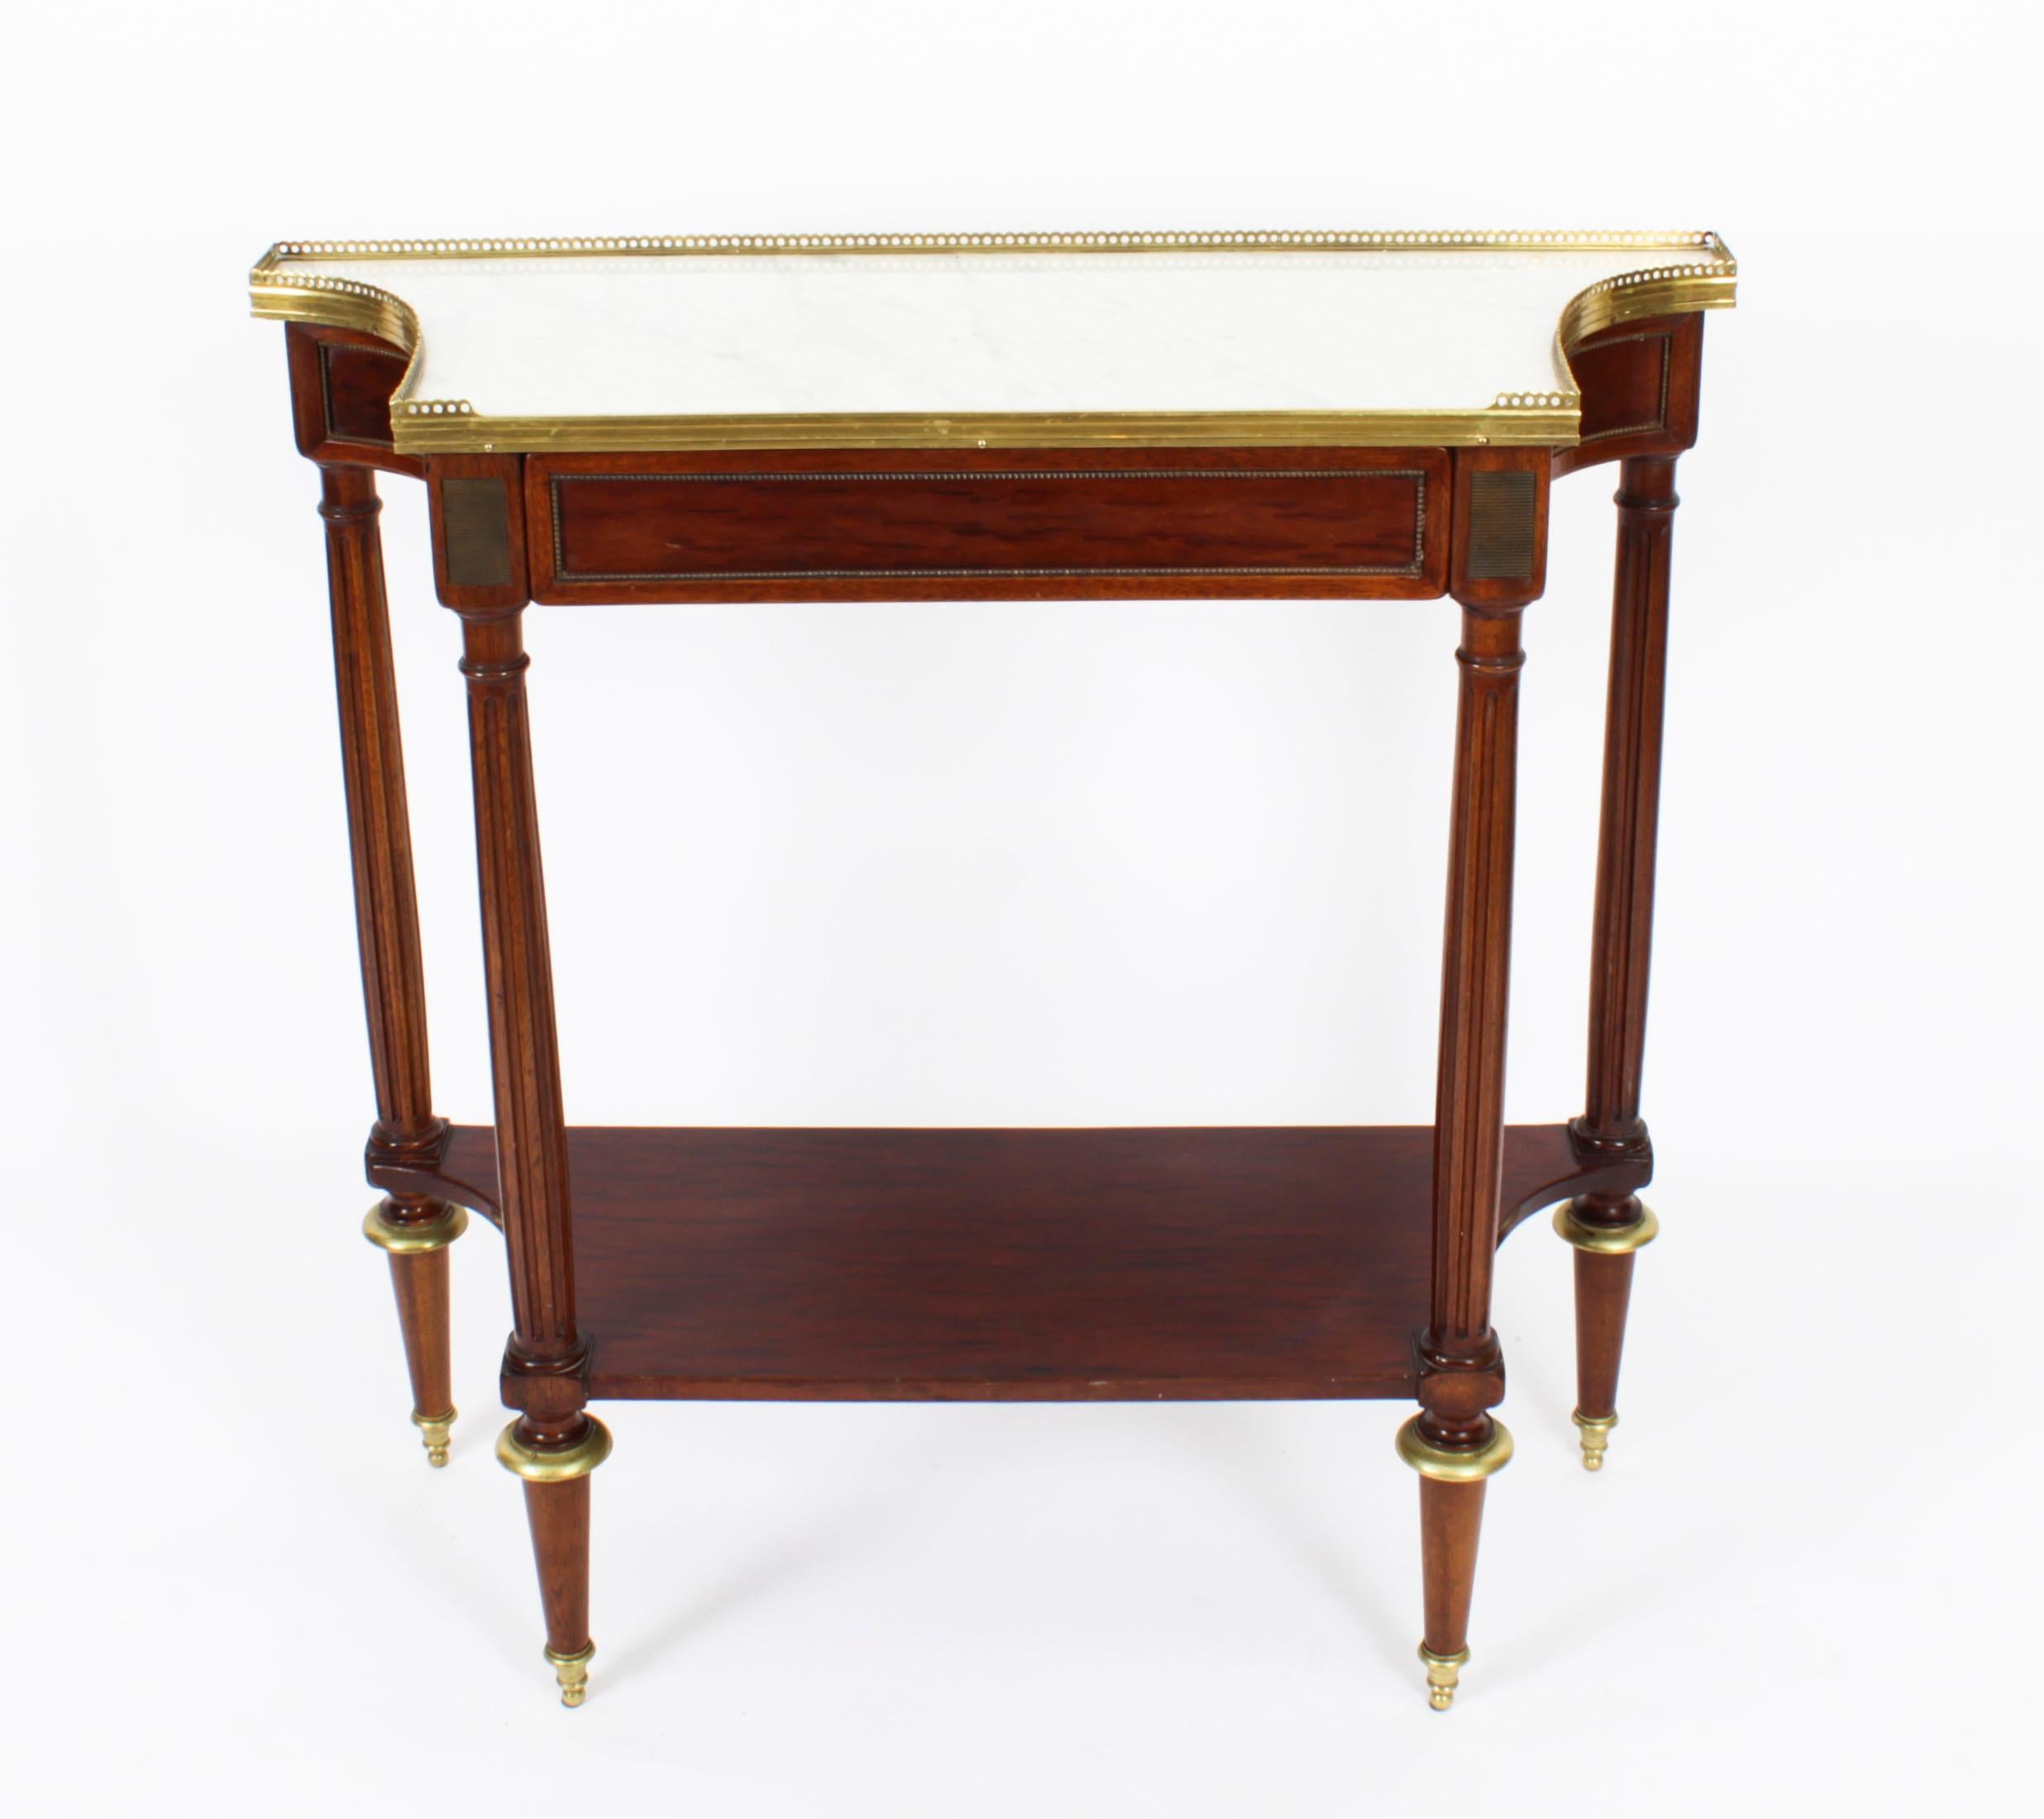 Dies ist eine feine antike Französisch Directoire Marmor gekrönt und Ormolu montiert Mahagoni Konsole Tisch, aus CIRCA 1840.
 
Die geformte Platte aus Carrara-Marmor ist mit einer dekorativen Galerie aus Messing versehen, die sich über einer mit